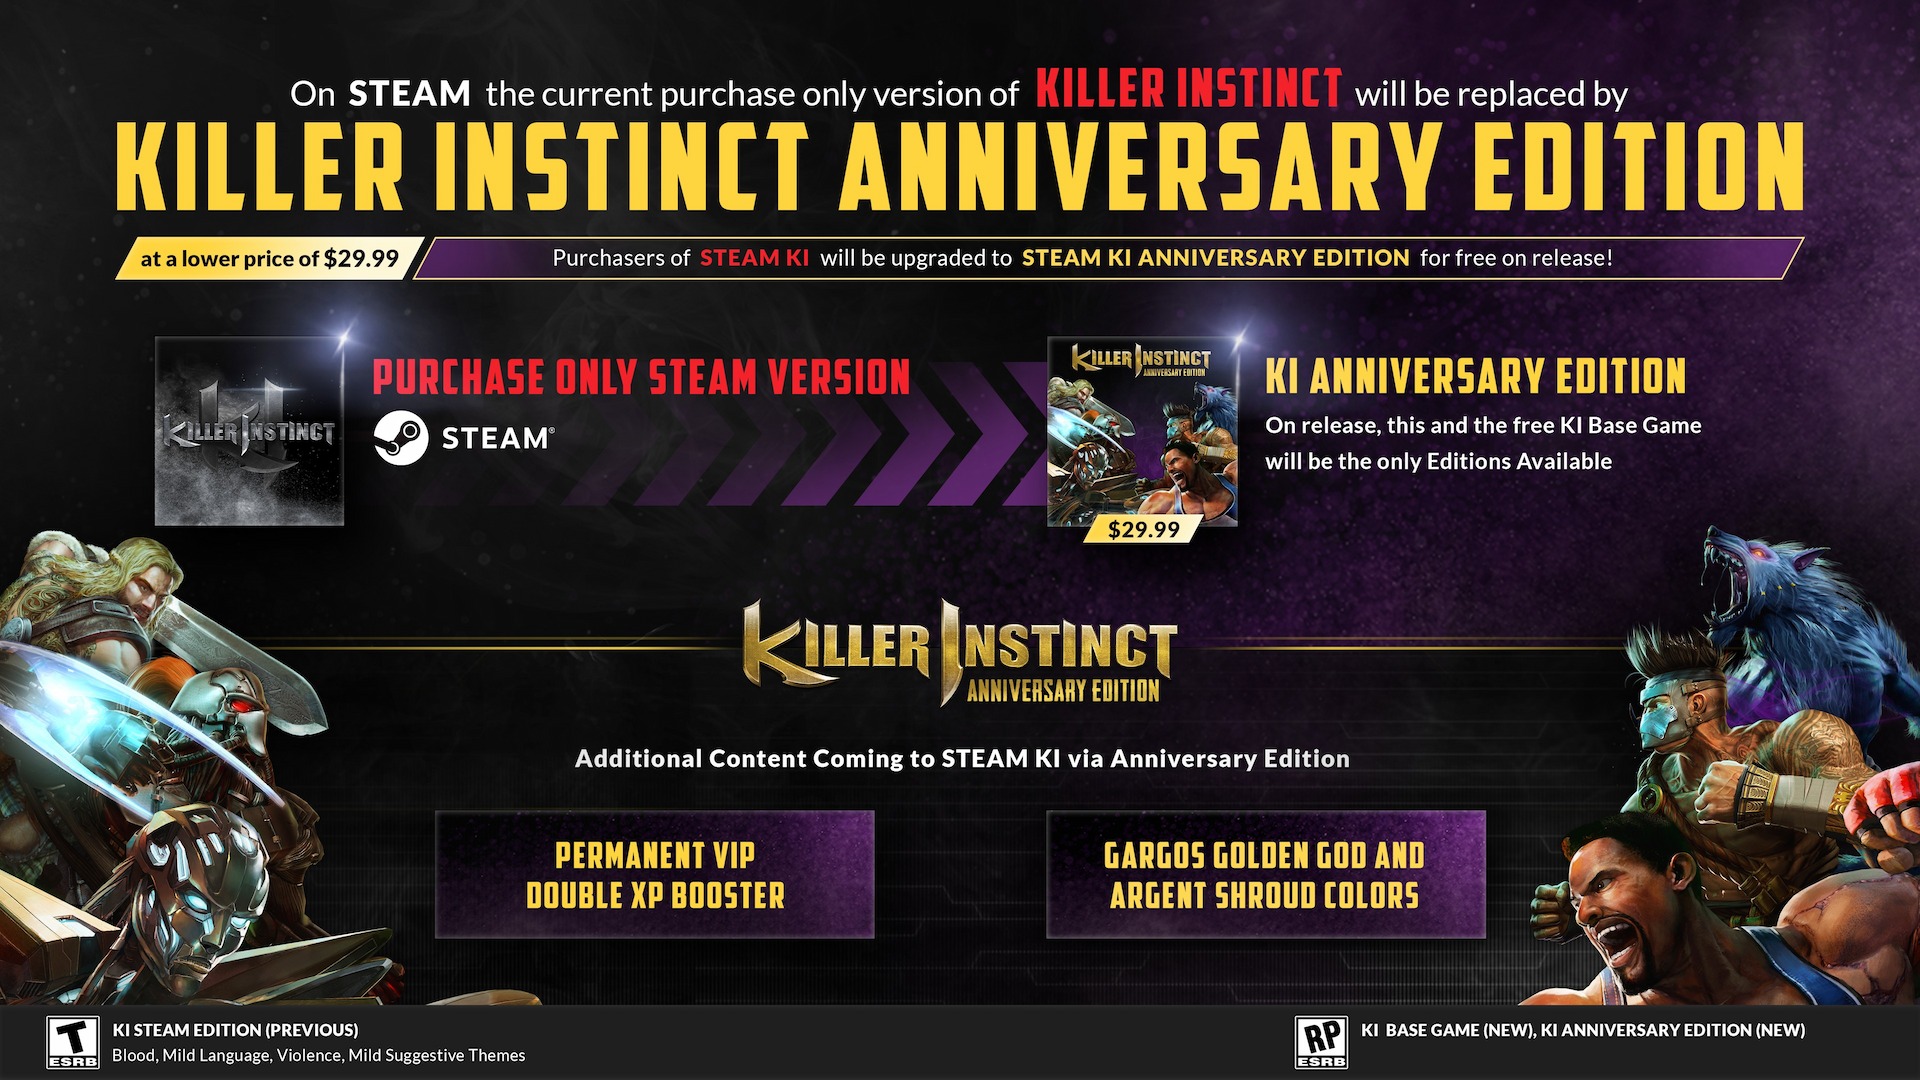 Een media-afbeelding voor Killer Instinct van de ontwikkelaar met details over de Steam-release